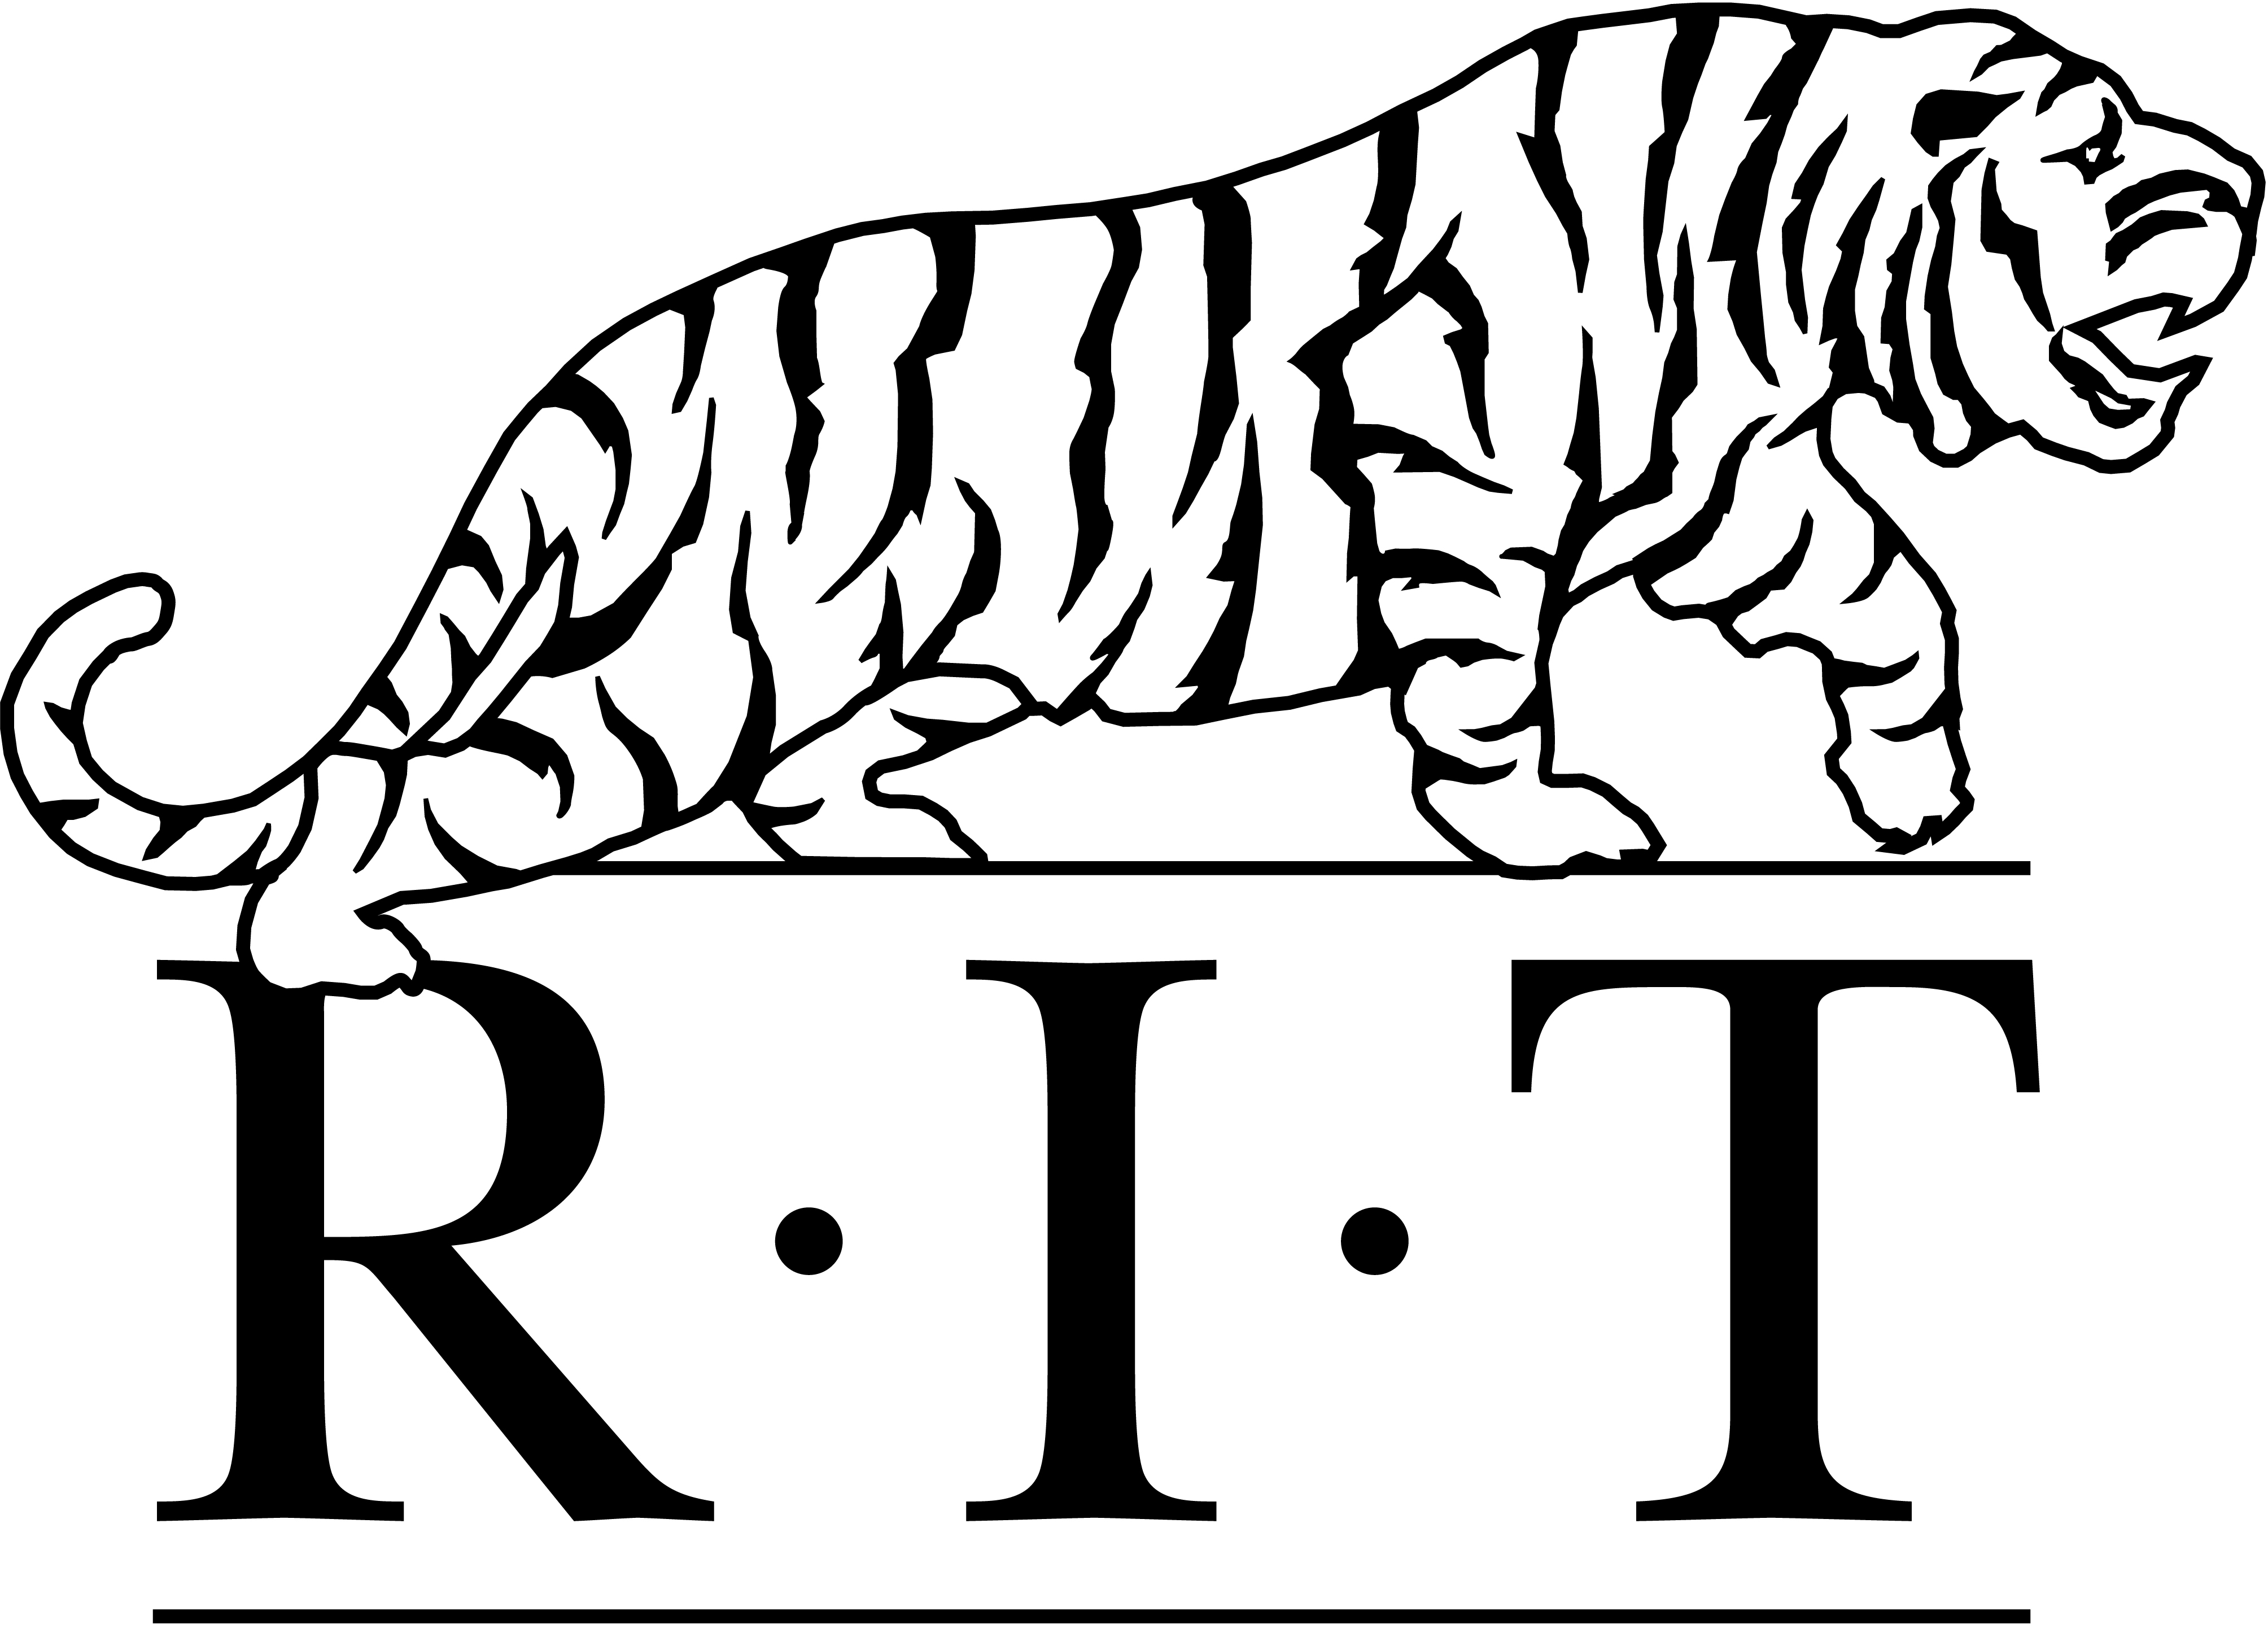 rit logo